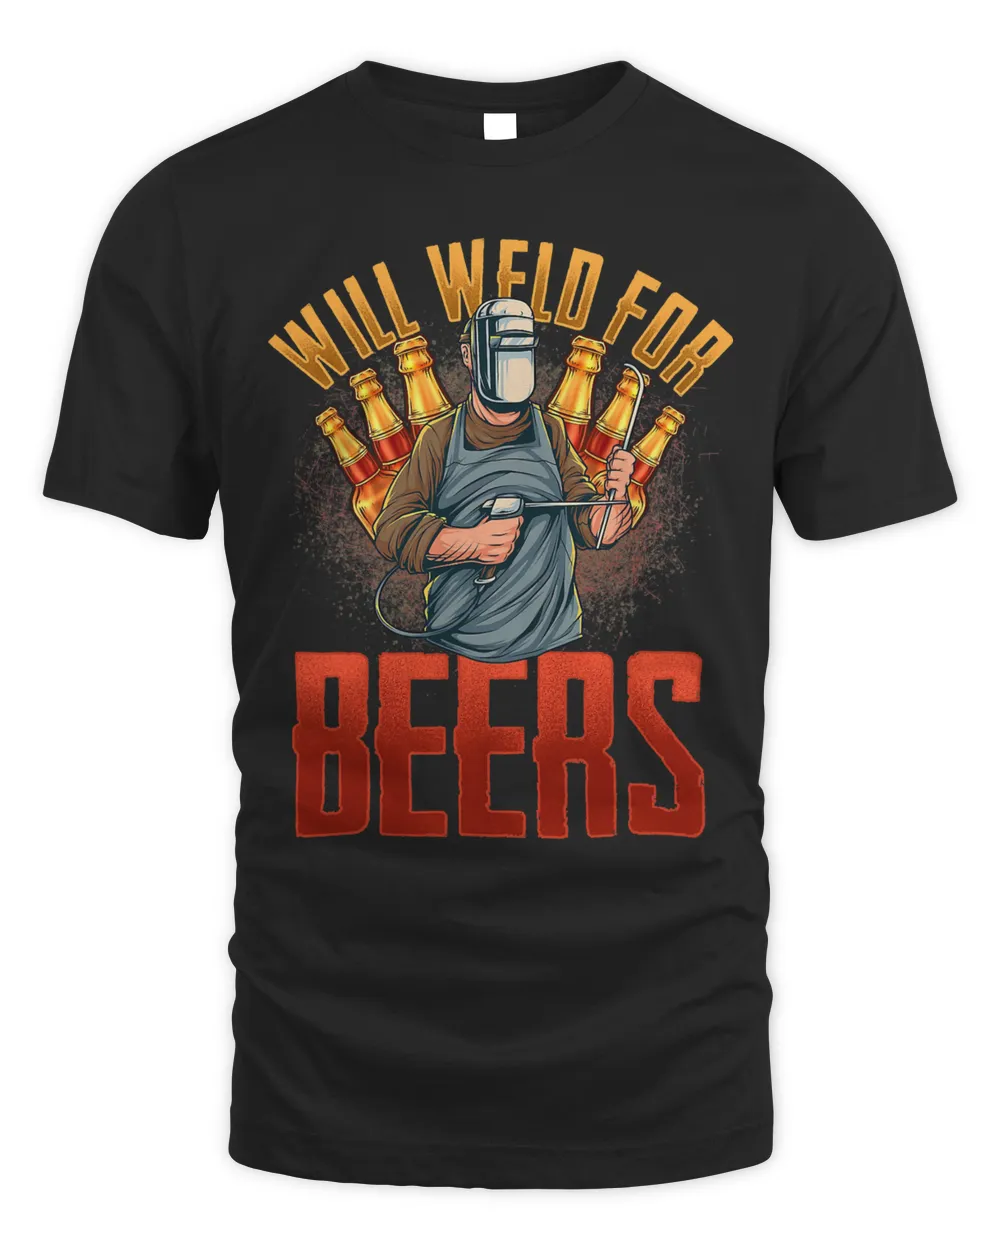 WILL WELD FOR BEER welders Welding tshirt tee tees73